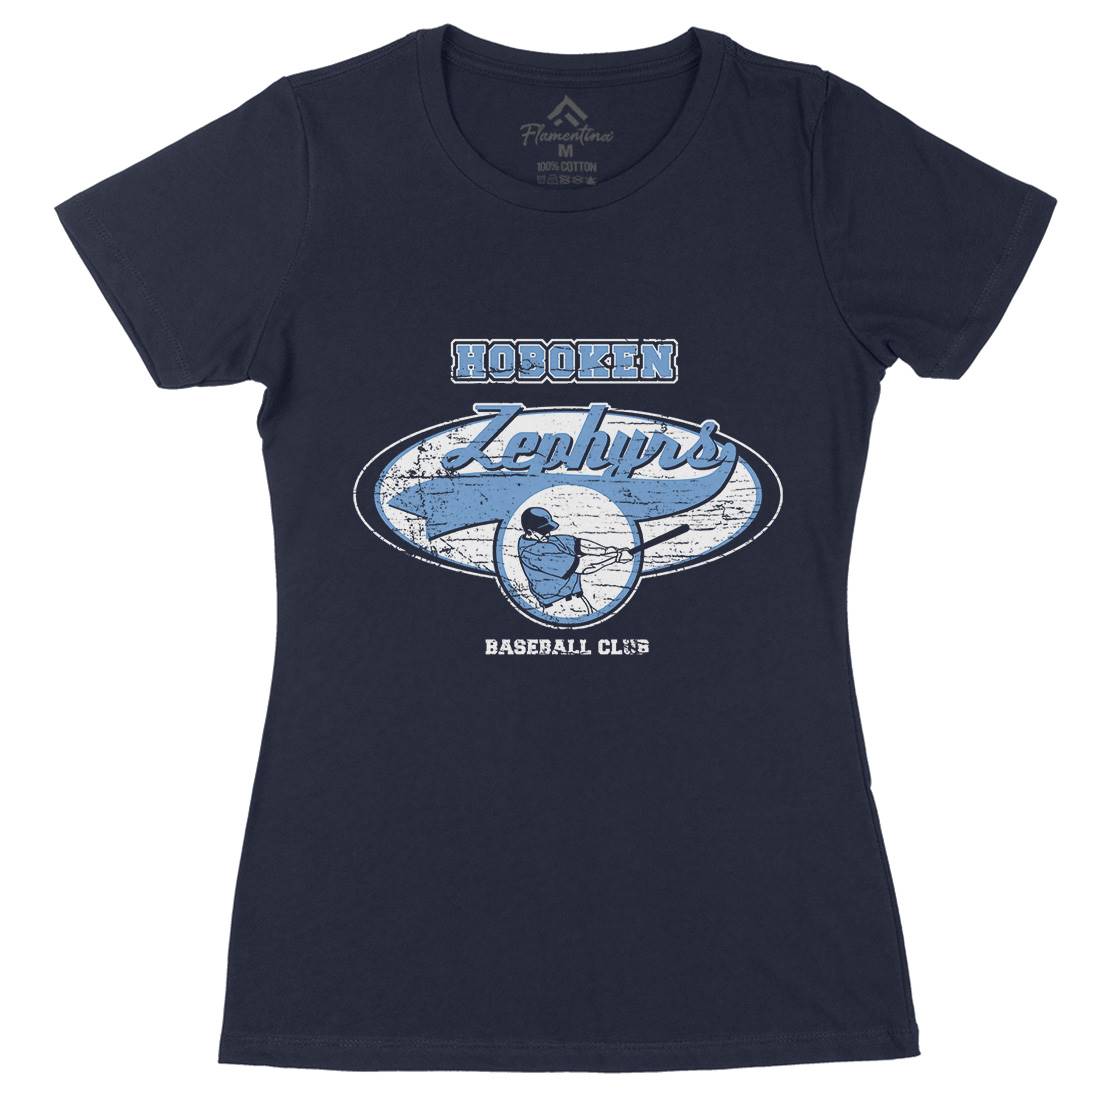 Hoboken Zephyrs Womens Organic Crew Neck T-Shirt Sport D119